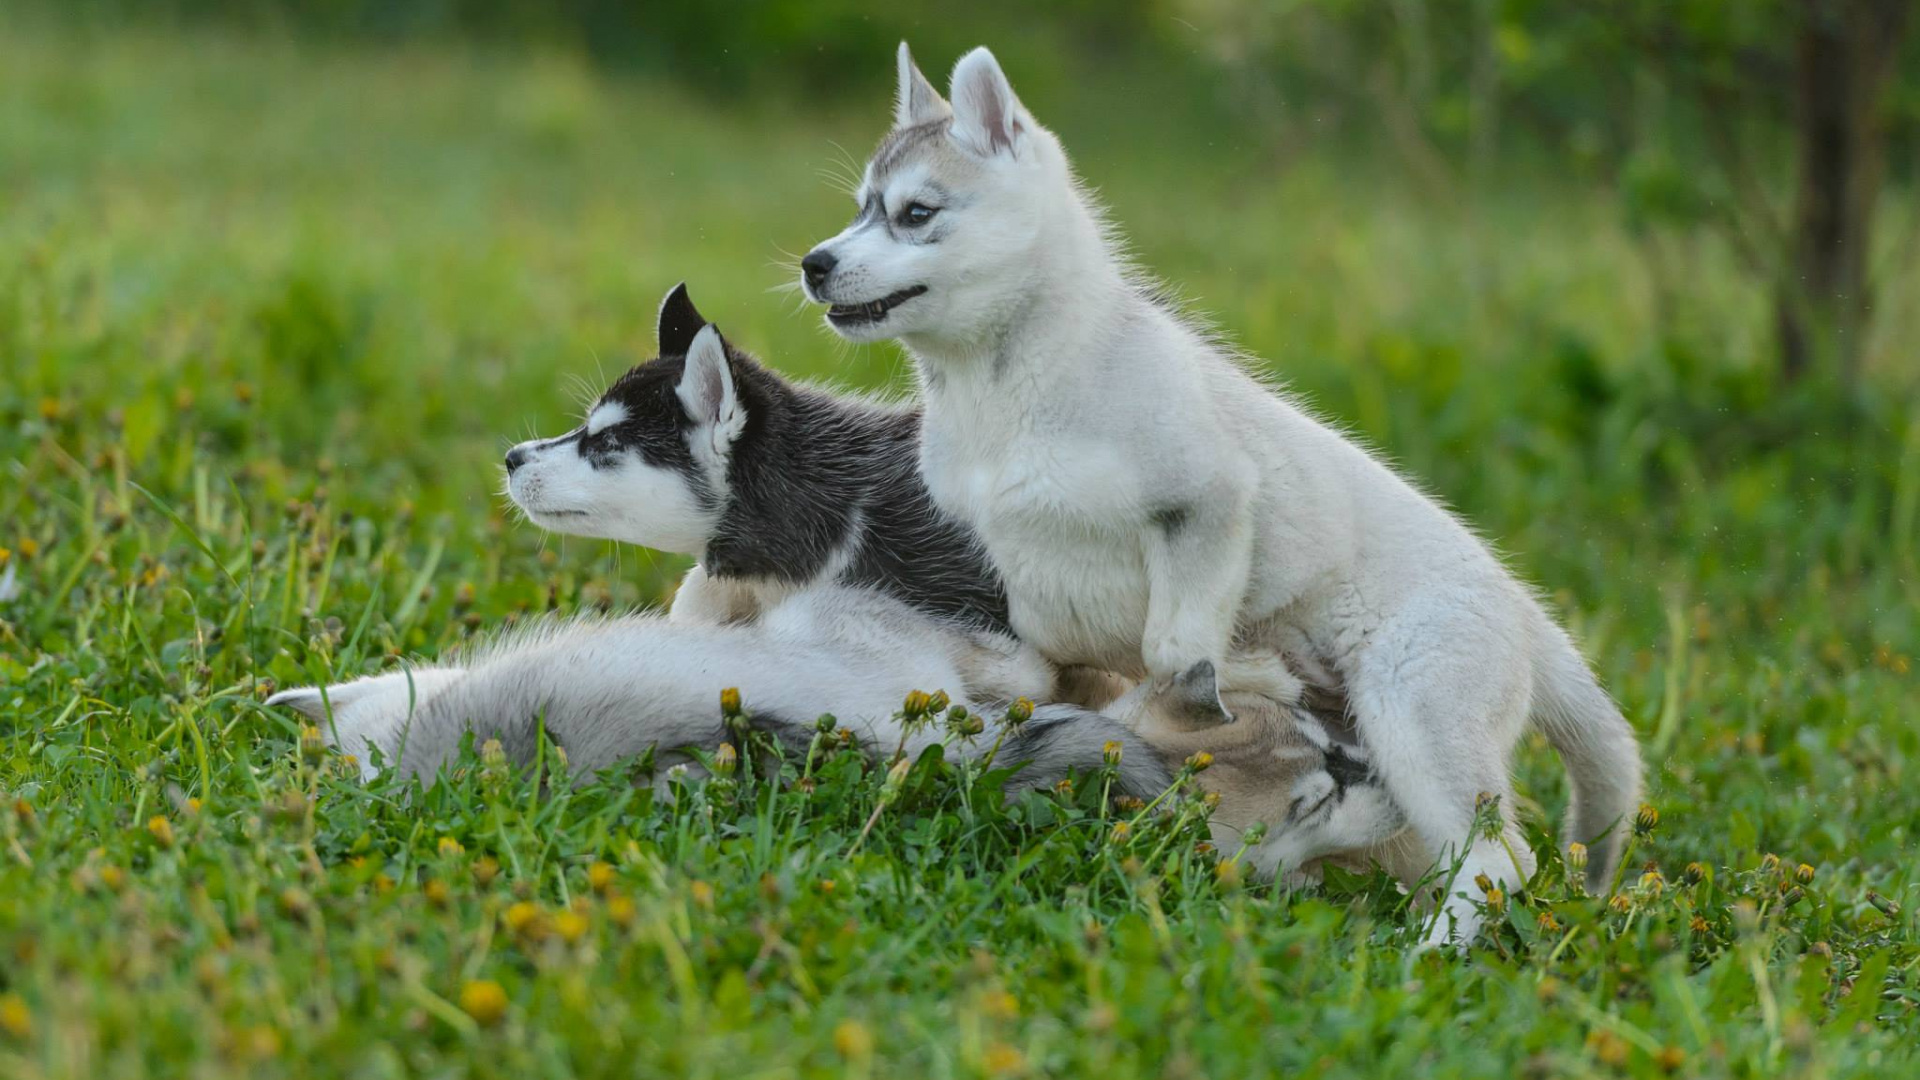 萨哈林赫斯基, 加拿大的爱斯基摩狗, 西西伯利亚的莱卡, 东西伯利亚的莱卡, 捷克斯洛伐克那只狼狗 壁纸 1920x1080 允许